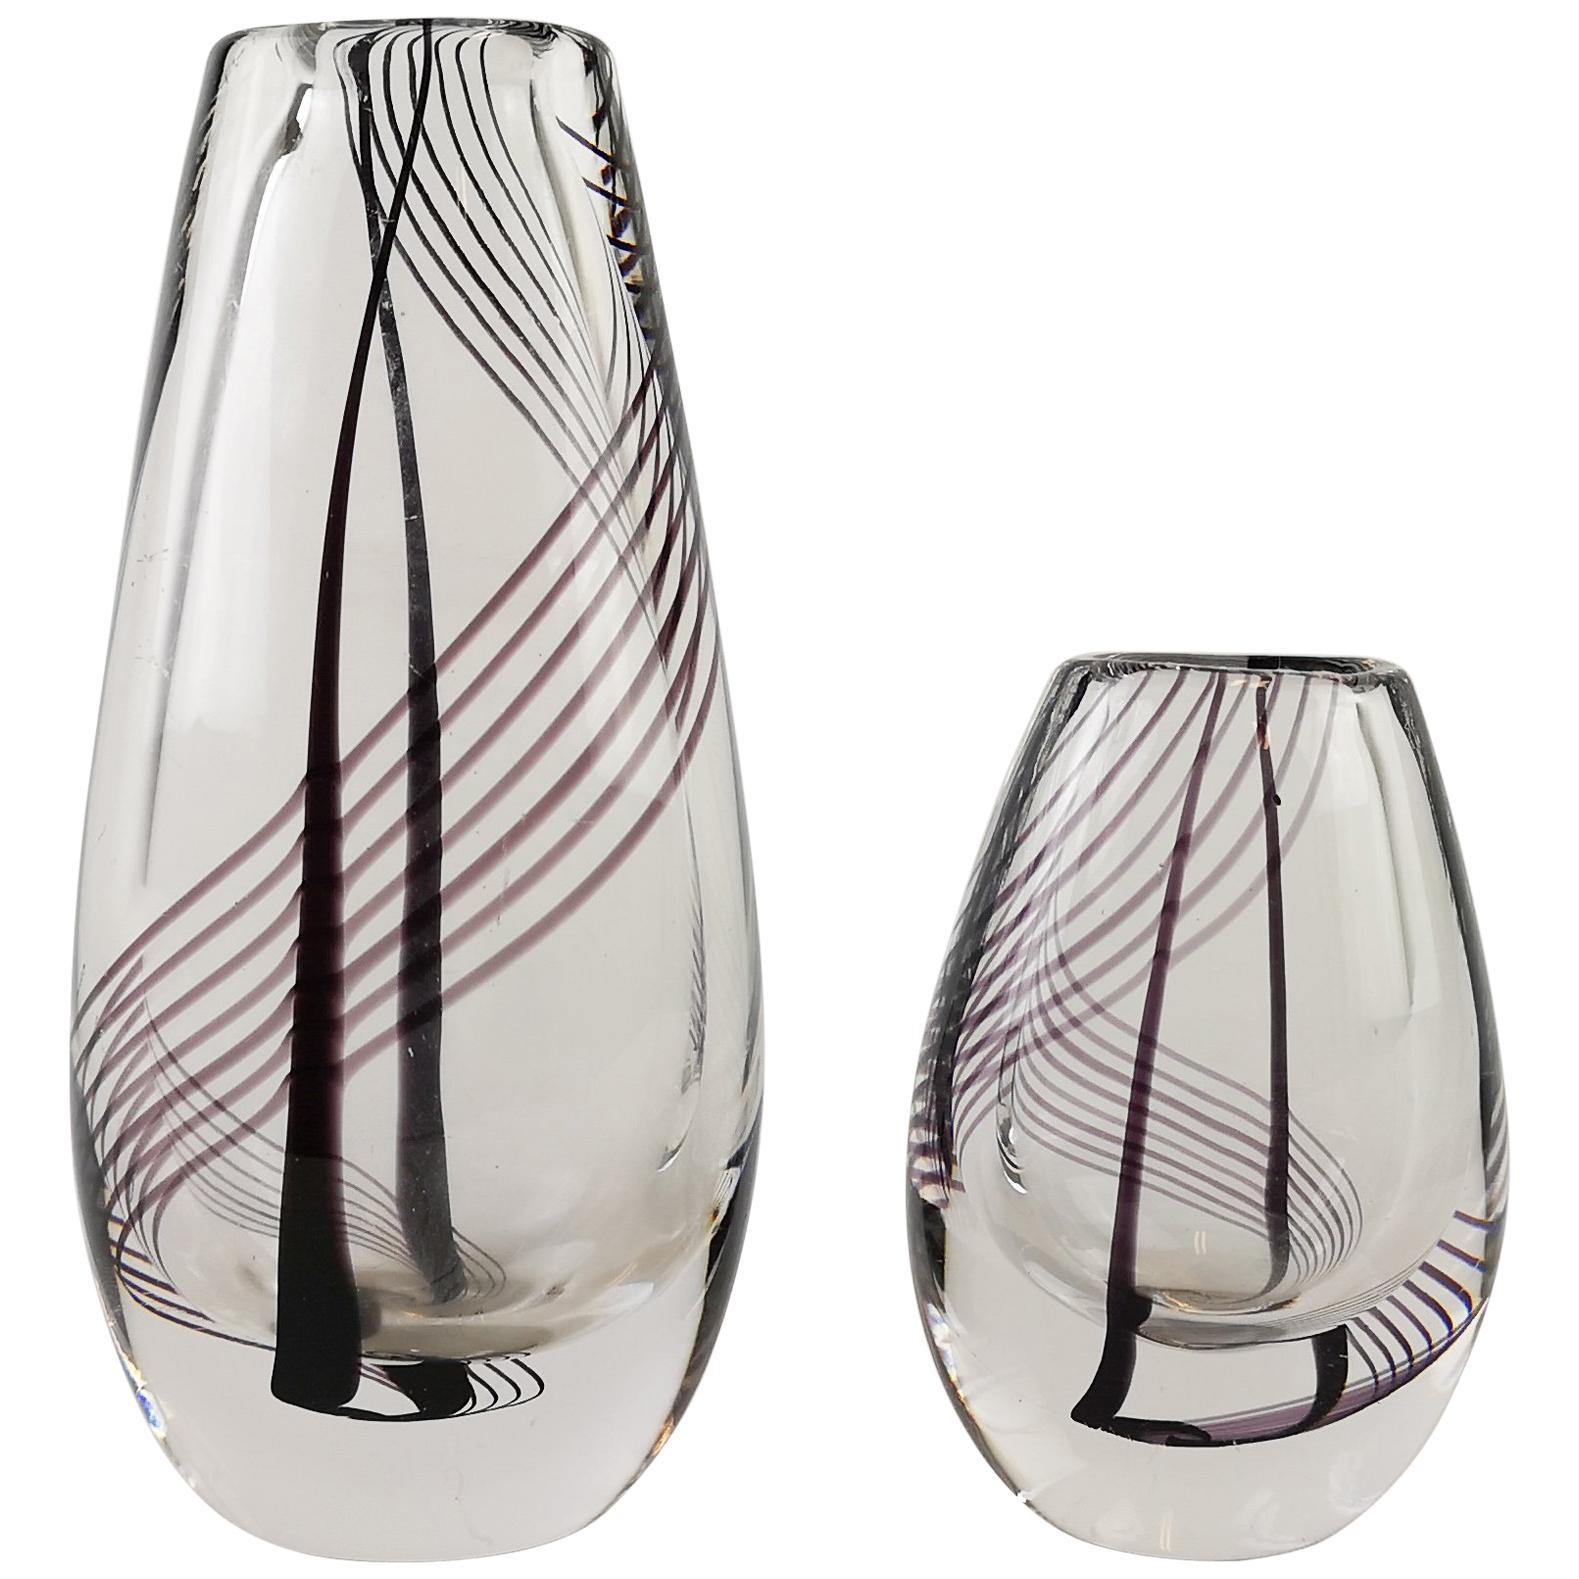 Vasen aus Kunstglas von Kosta Boda, signiert, Vicke Lindstrand